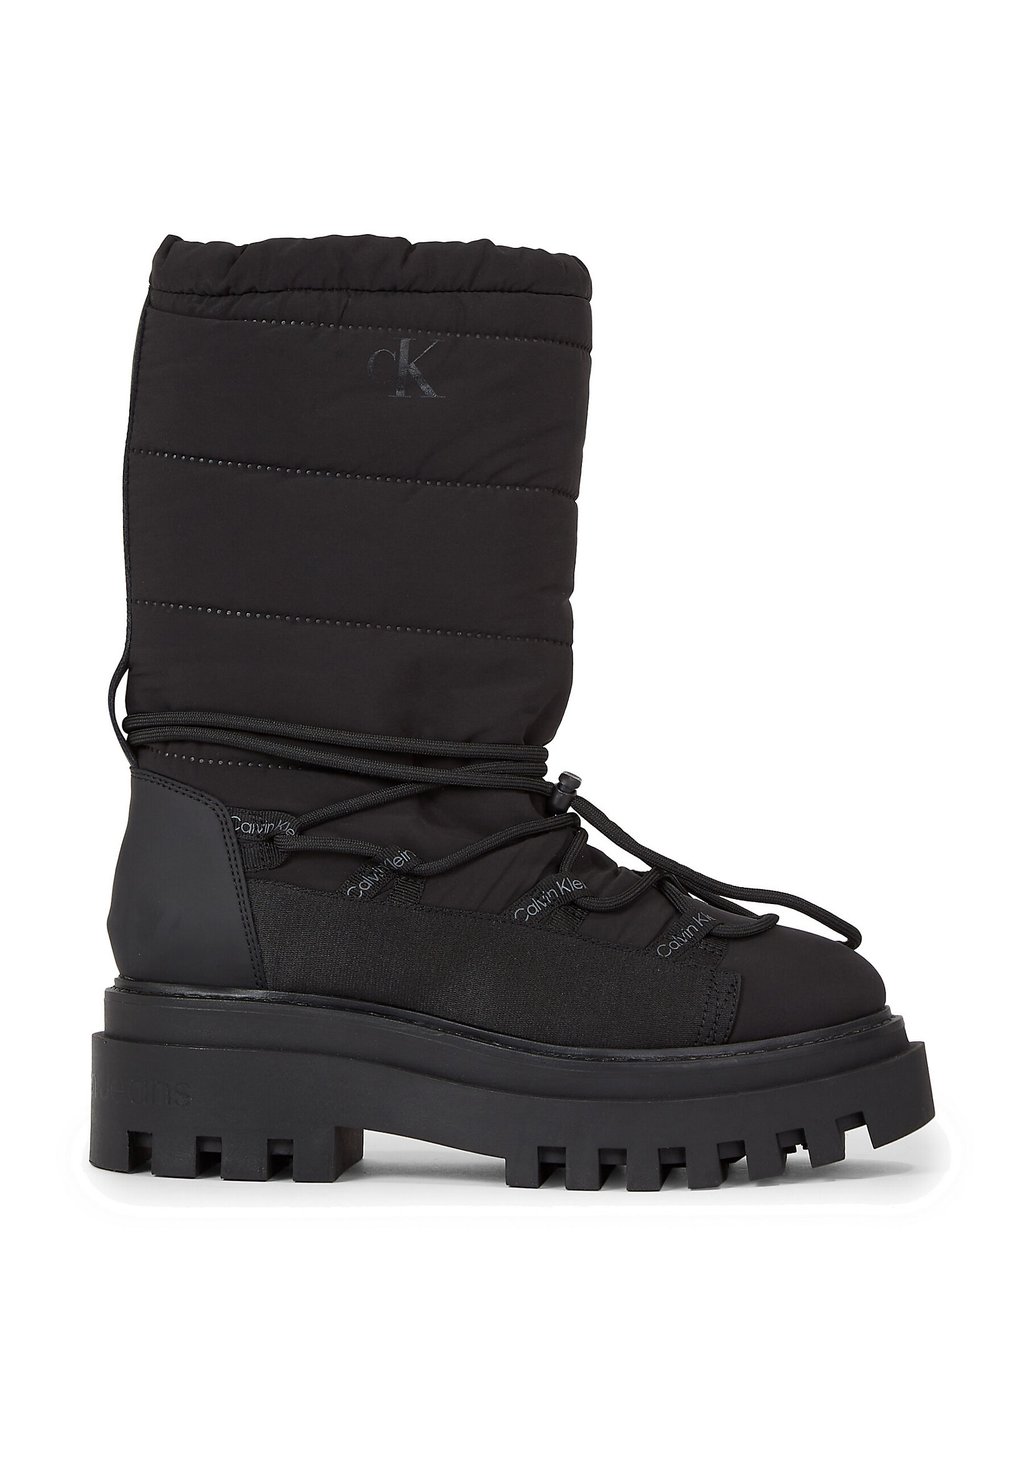 Ботинки Calvin Klein Jeans FLATFORM SNOW, цвет triple black топсайдеры hybrid boat shoe slip on calvin klein jeans цвет triple black